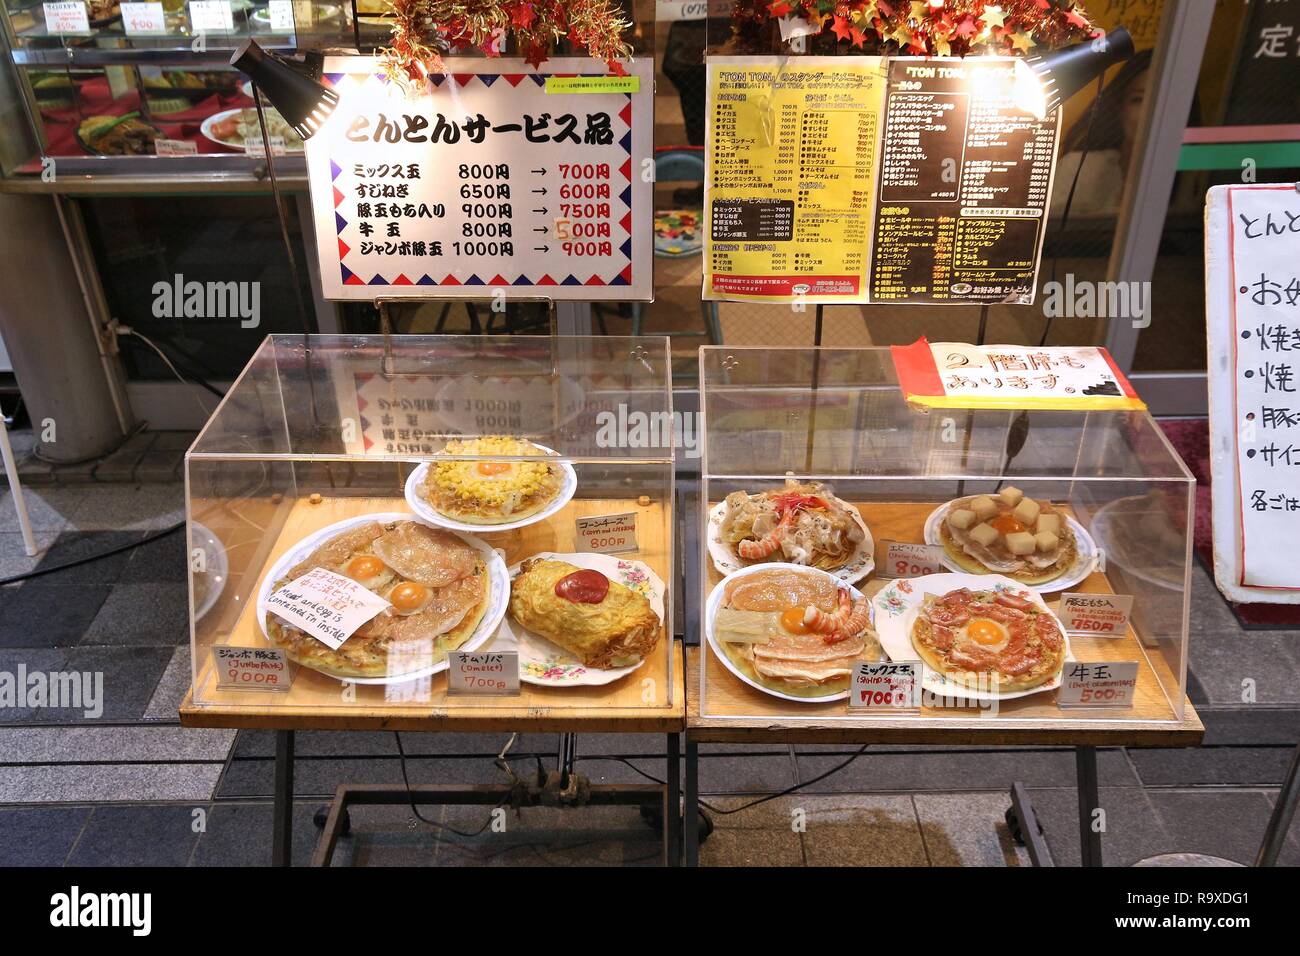 KYOTO, Japan - 27. NOVEMBER 2016: Japanisches Restaurant mit Kunststoff essen Anzeige in Kyoto, Japan. Kyoto ist eine große Stadt mit einer Bevölkerung von 1,5 Millionen. Stockfoto